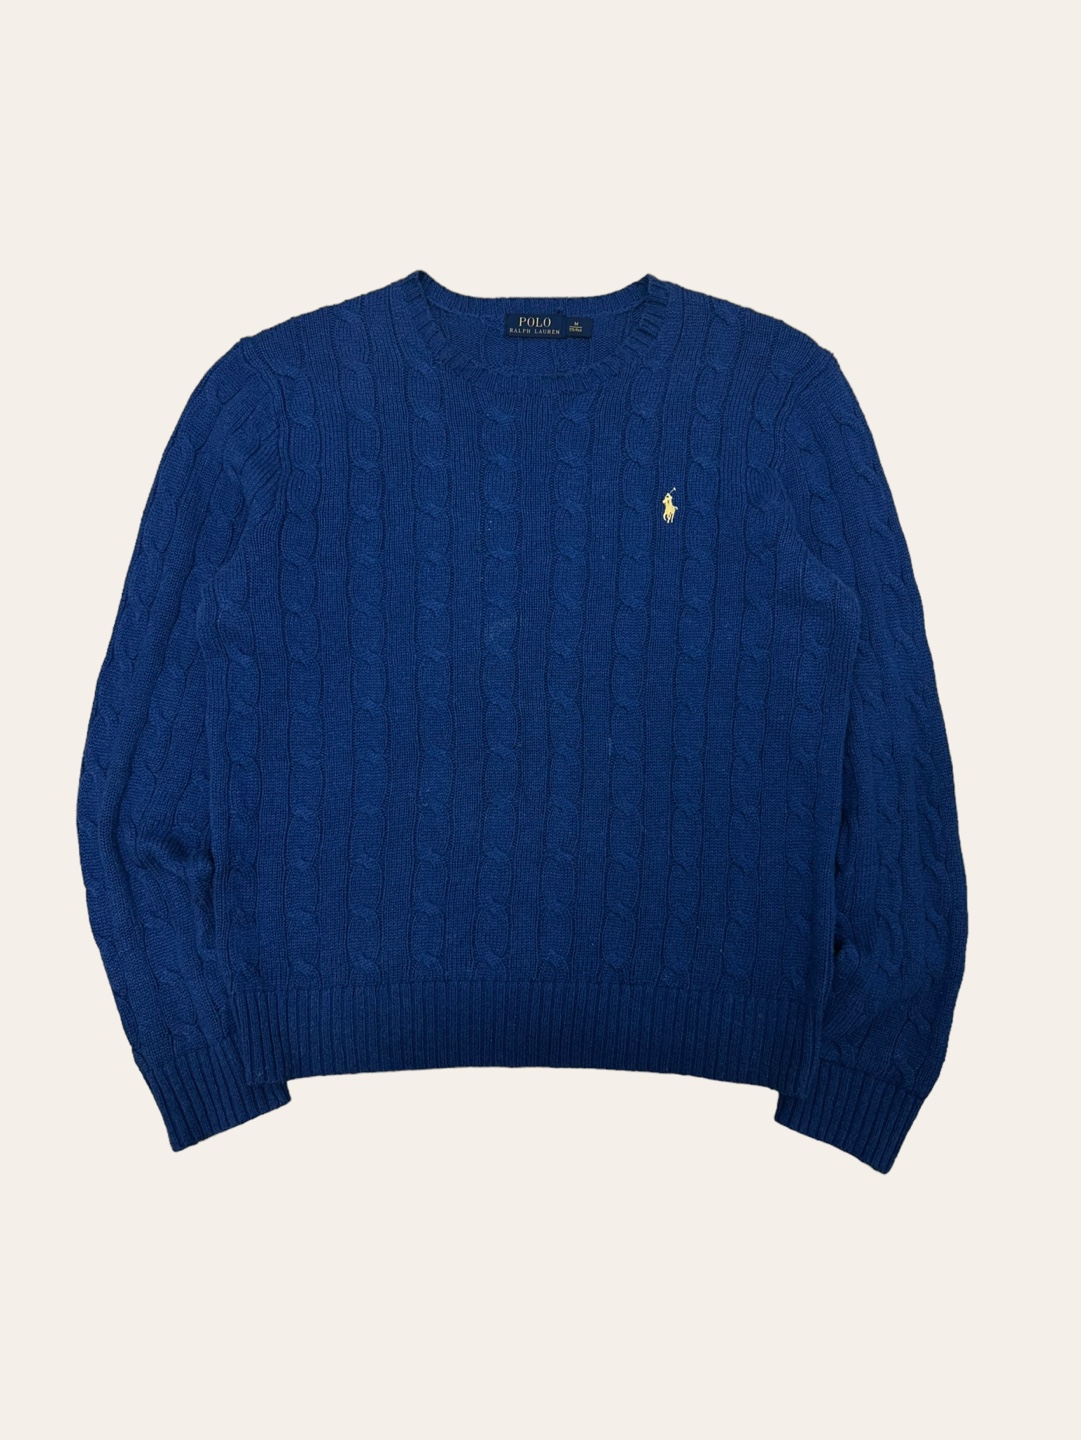 Polo ralph lauren blue cotton cable sweater M